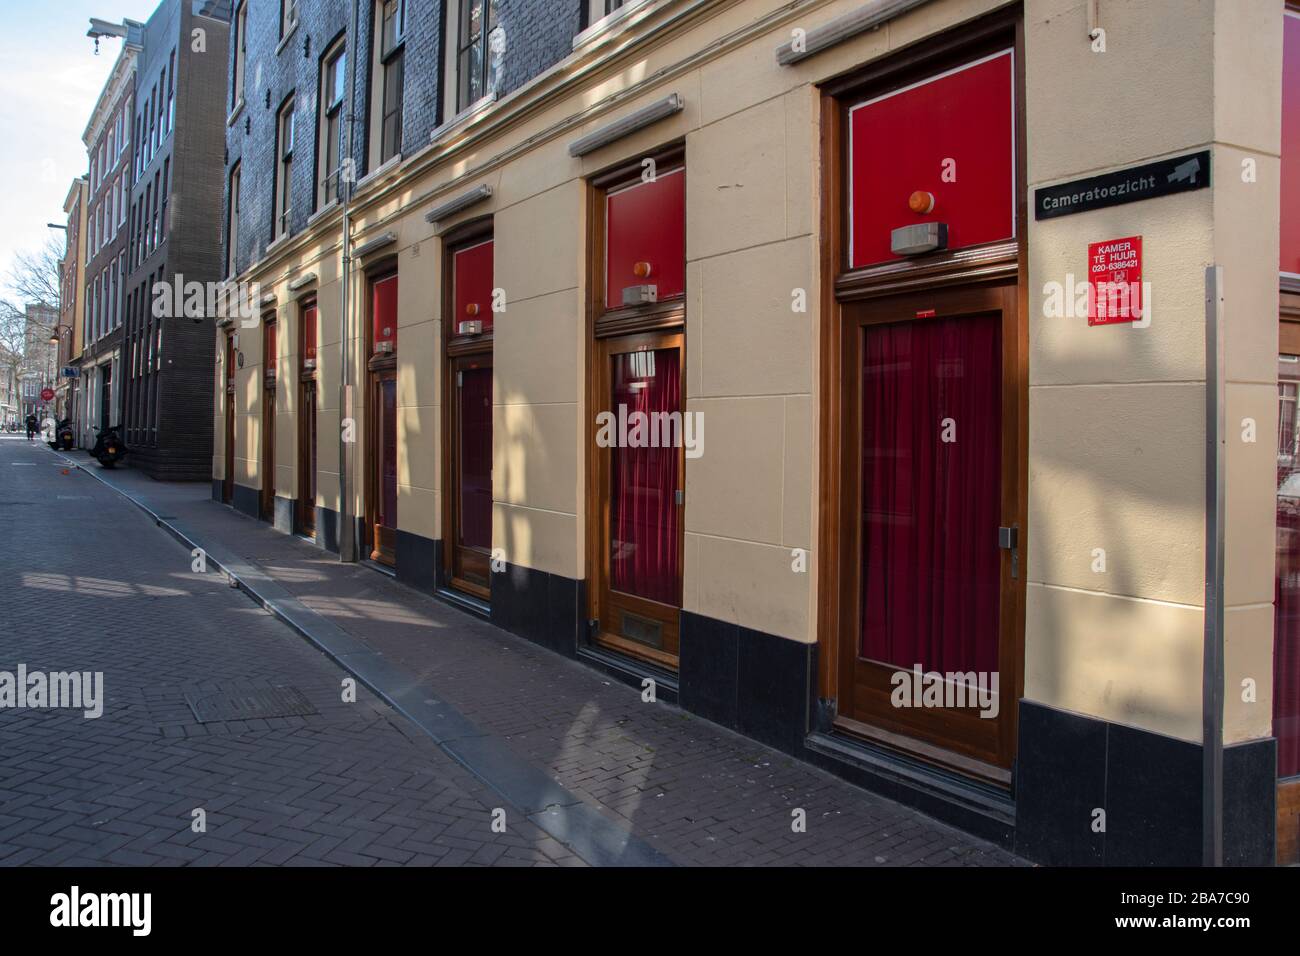 Chambres de tendon fermées au Red Light District Amsterdam Pays-Bas 2020 Banque D'Images